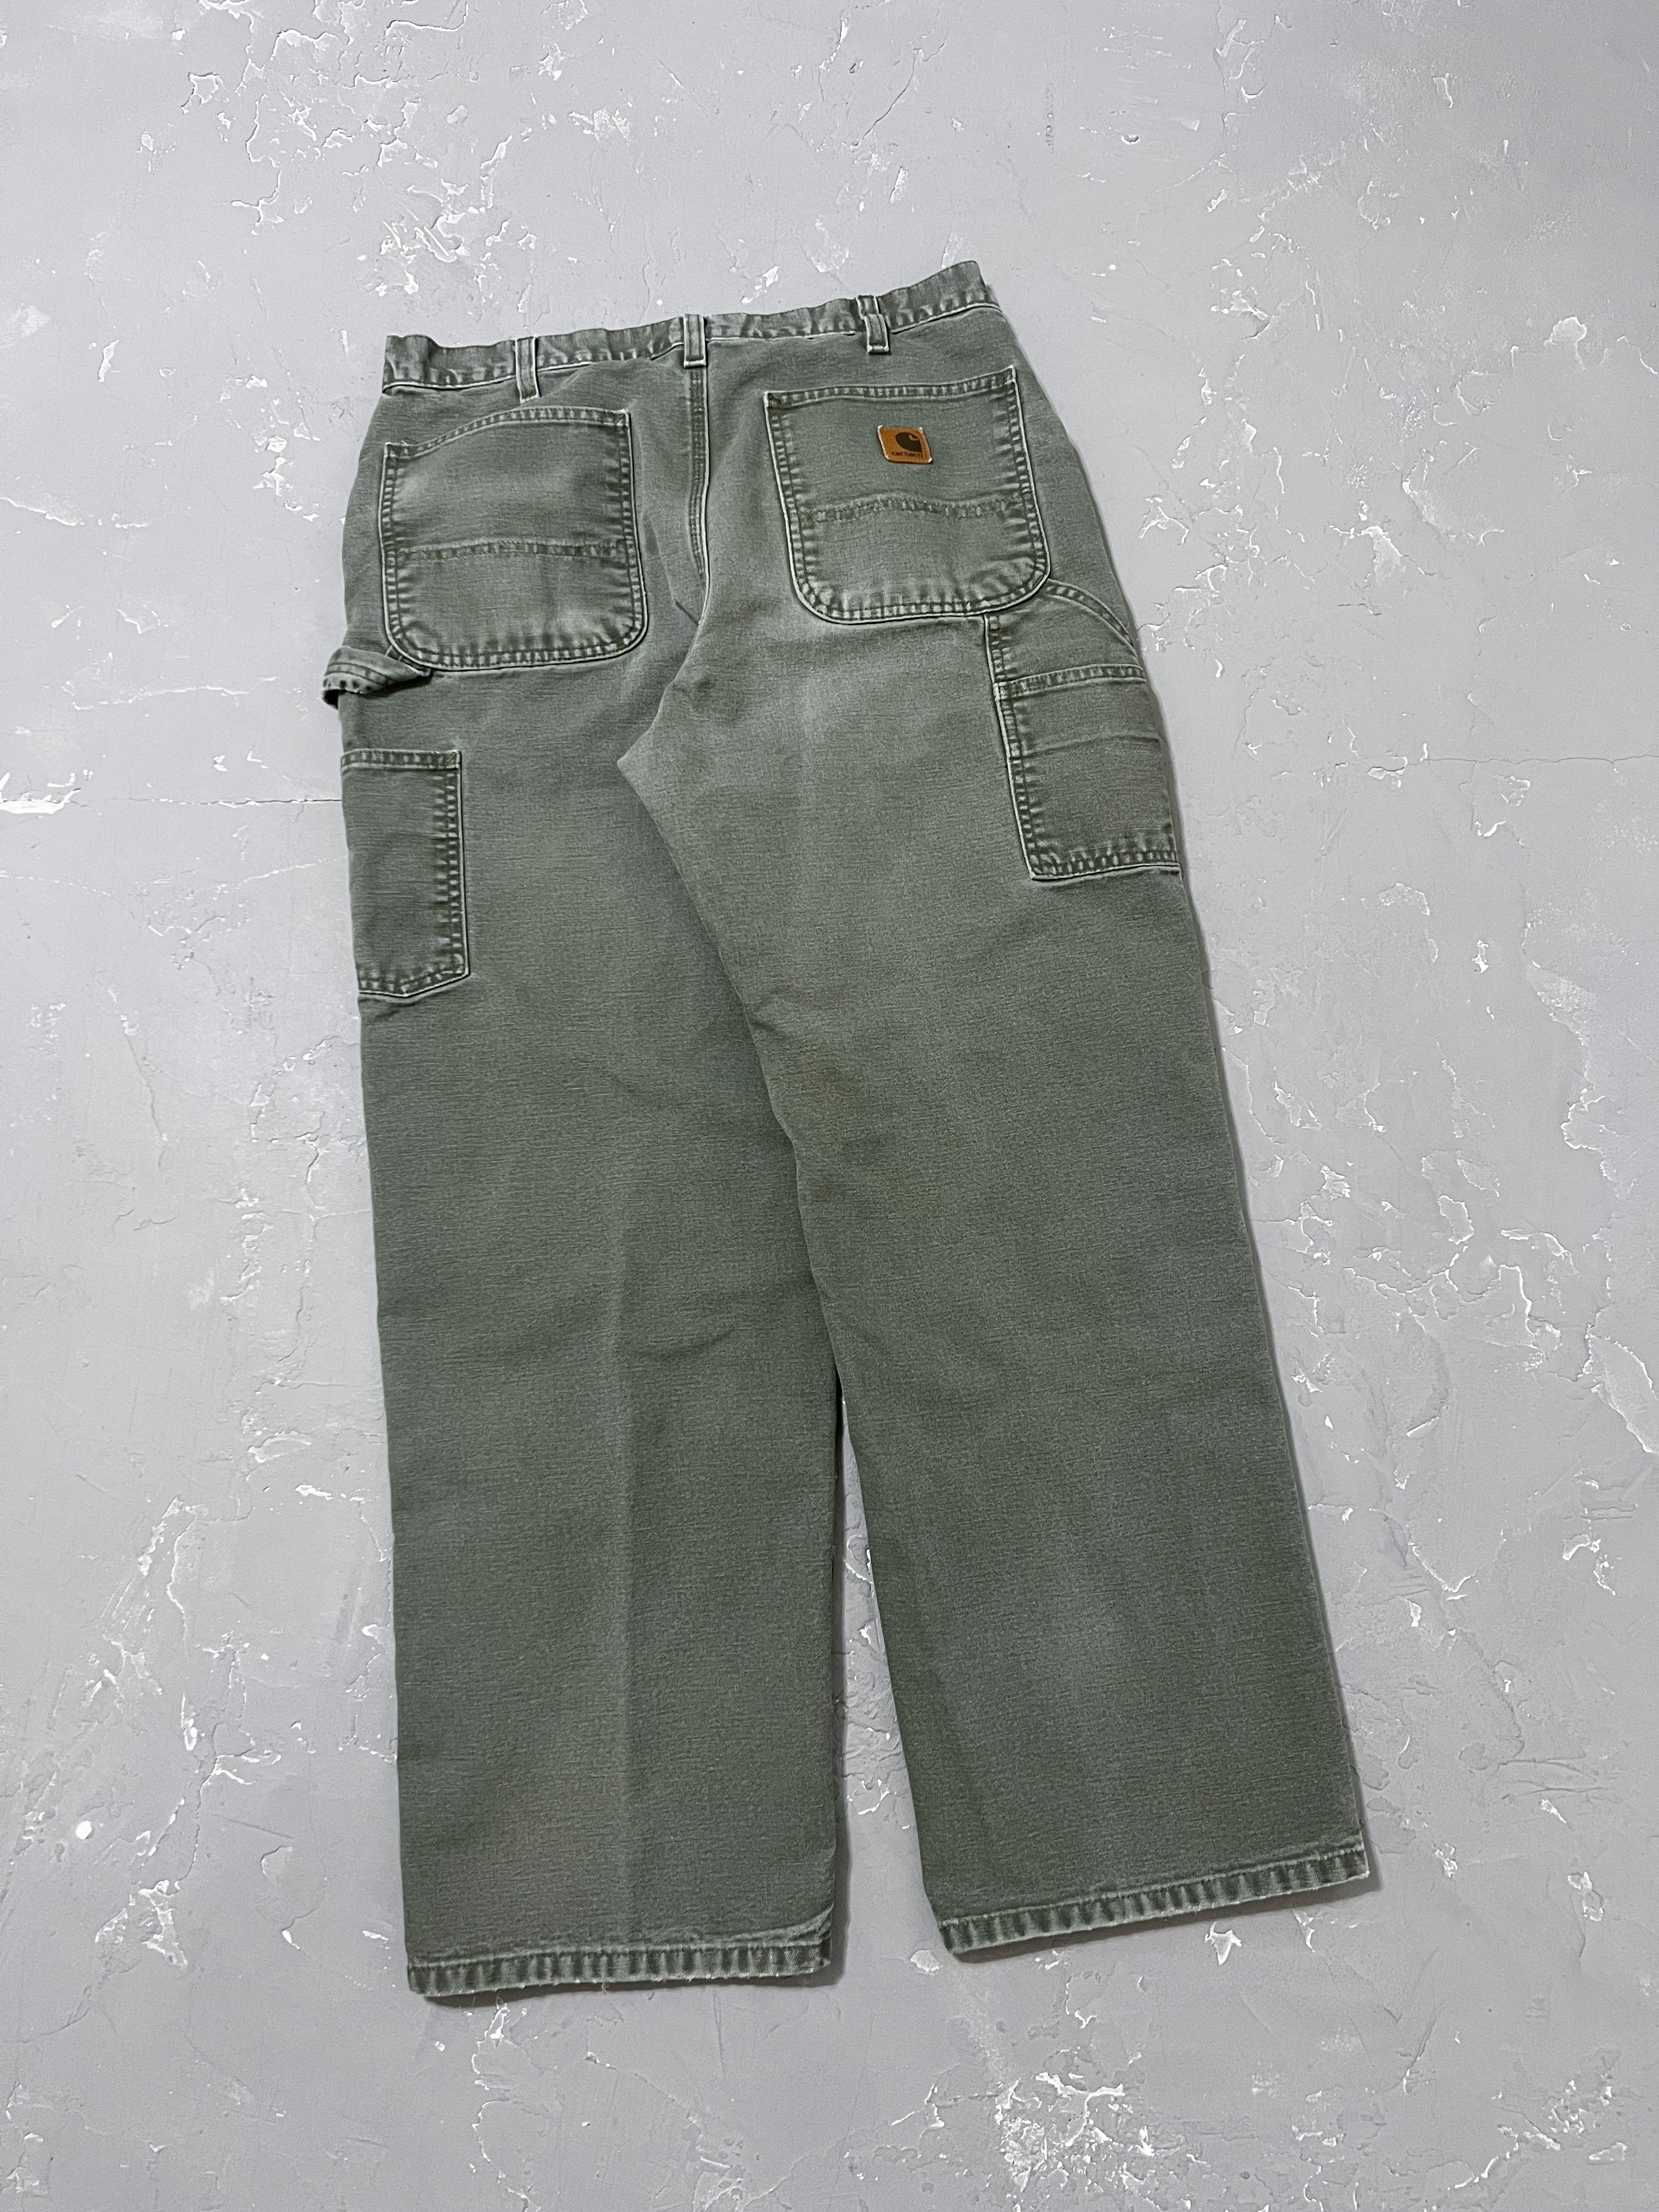 Carhartt Moss Green Carpenter Pants [34 x 32]